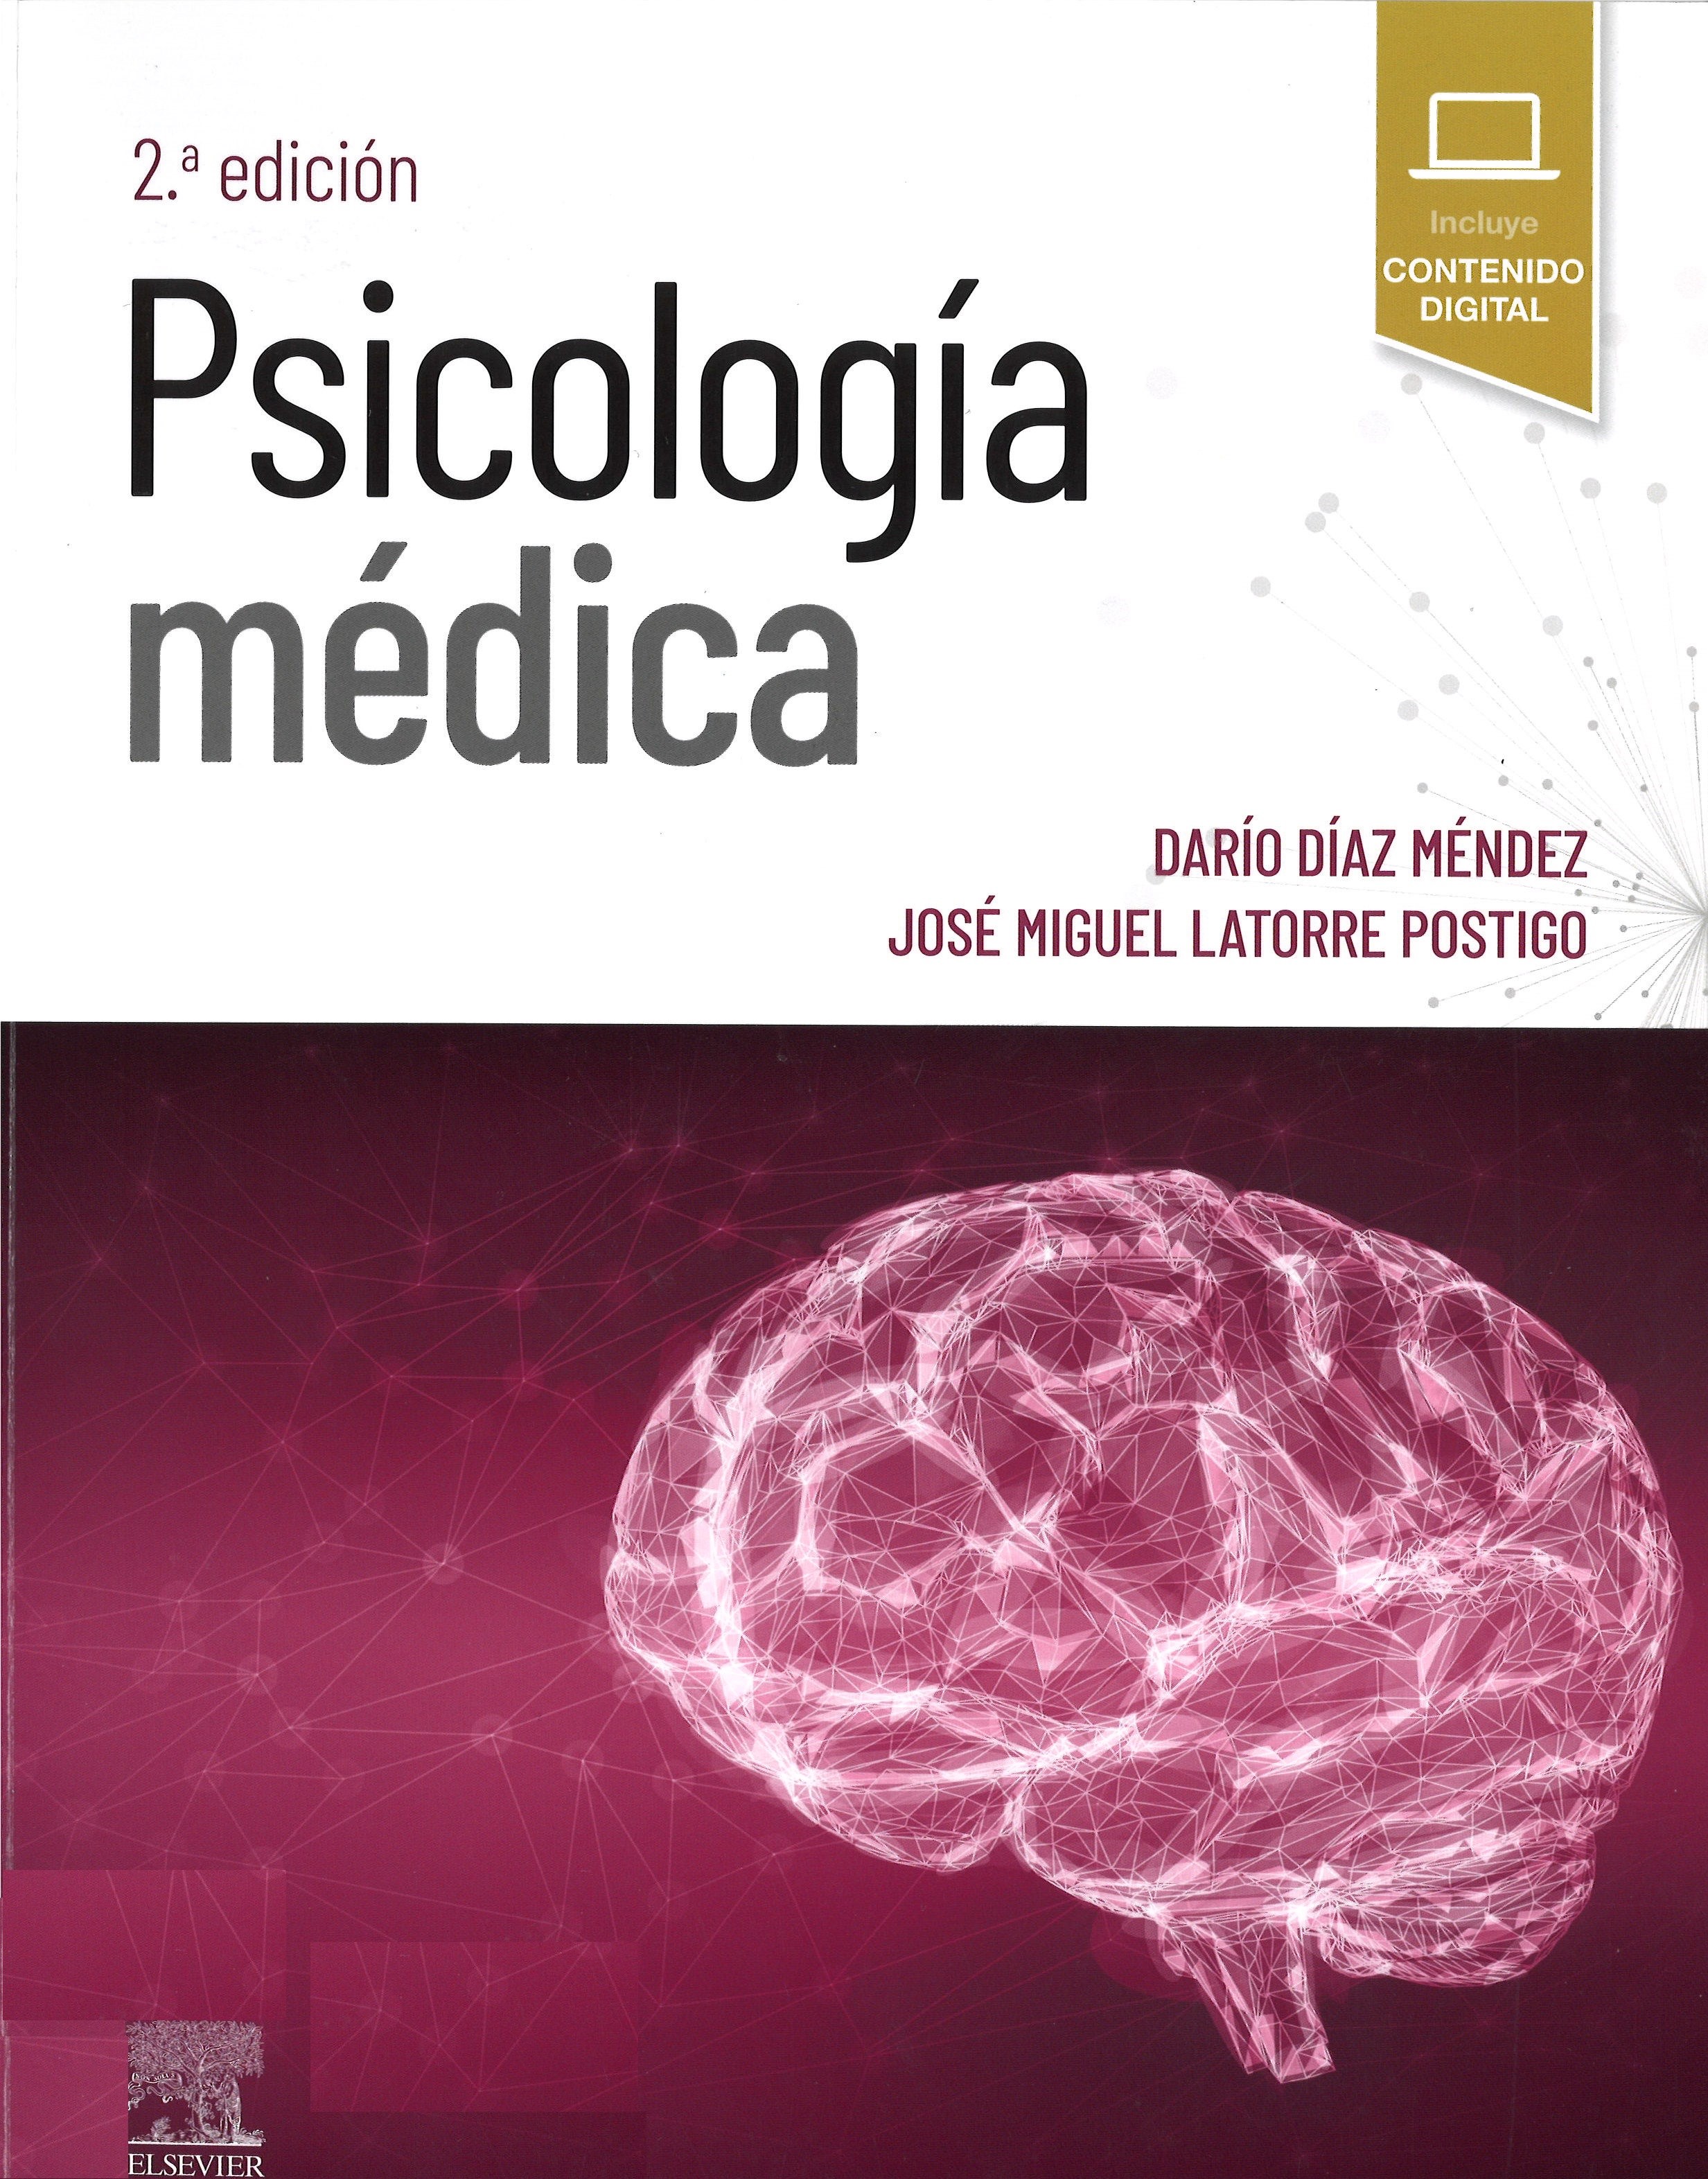 Imagen de portada del libro Psicología médica